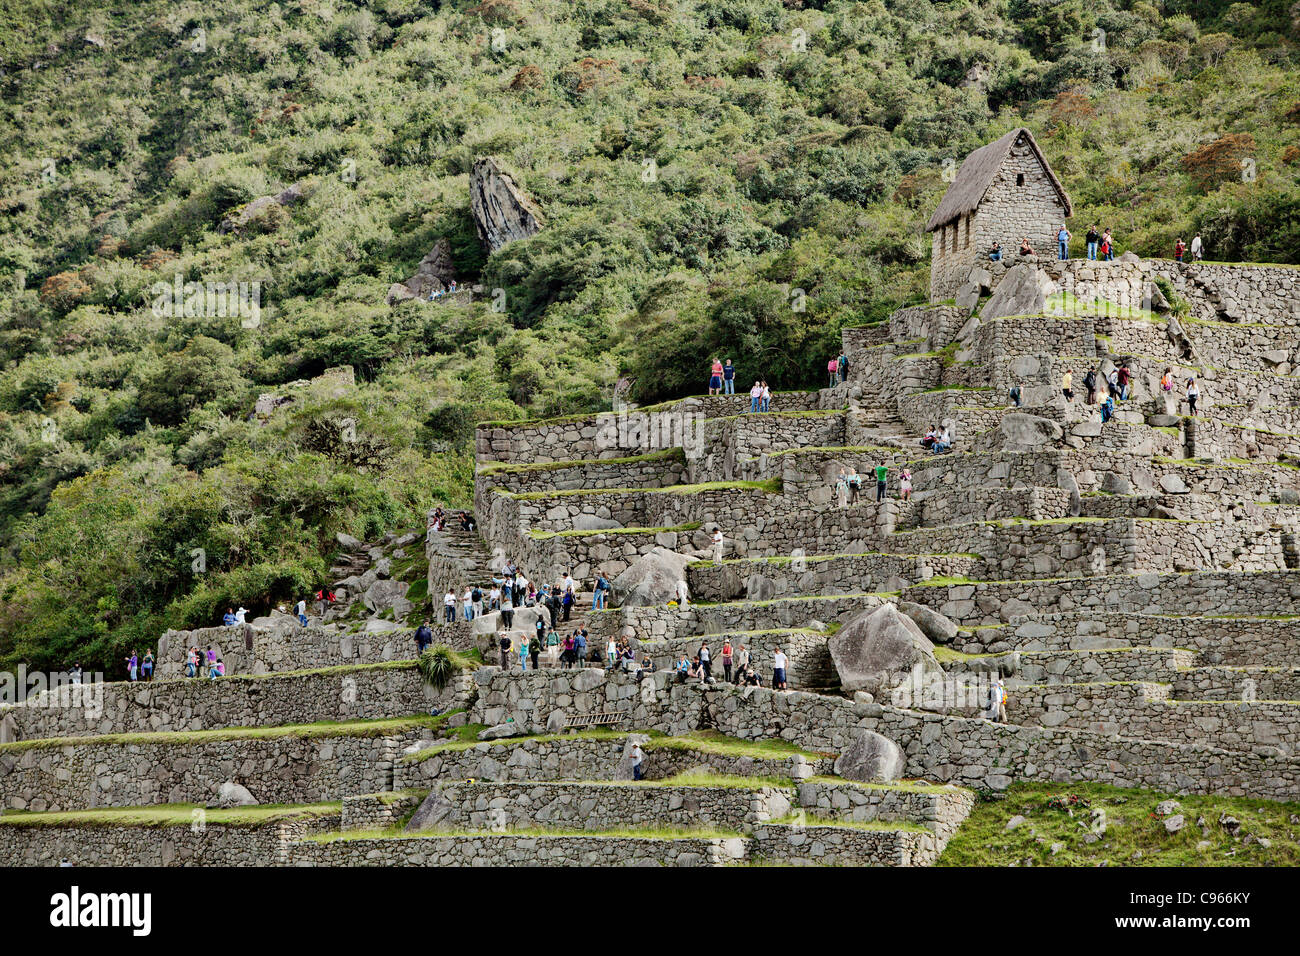 Cientos de turistas a antiguas ruinas incas de Machu Picchu, el sitio turístico más conocido en los Andes, Perú. Foto de stock